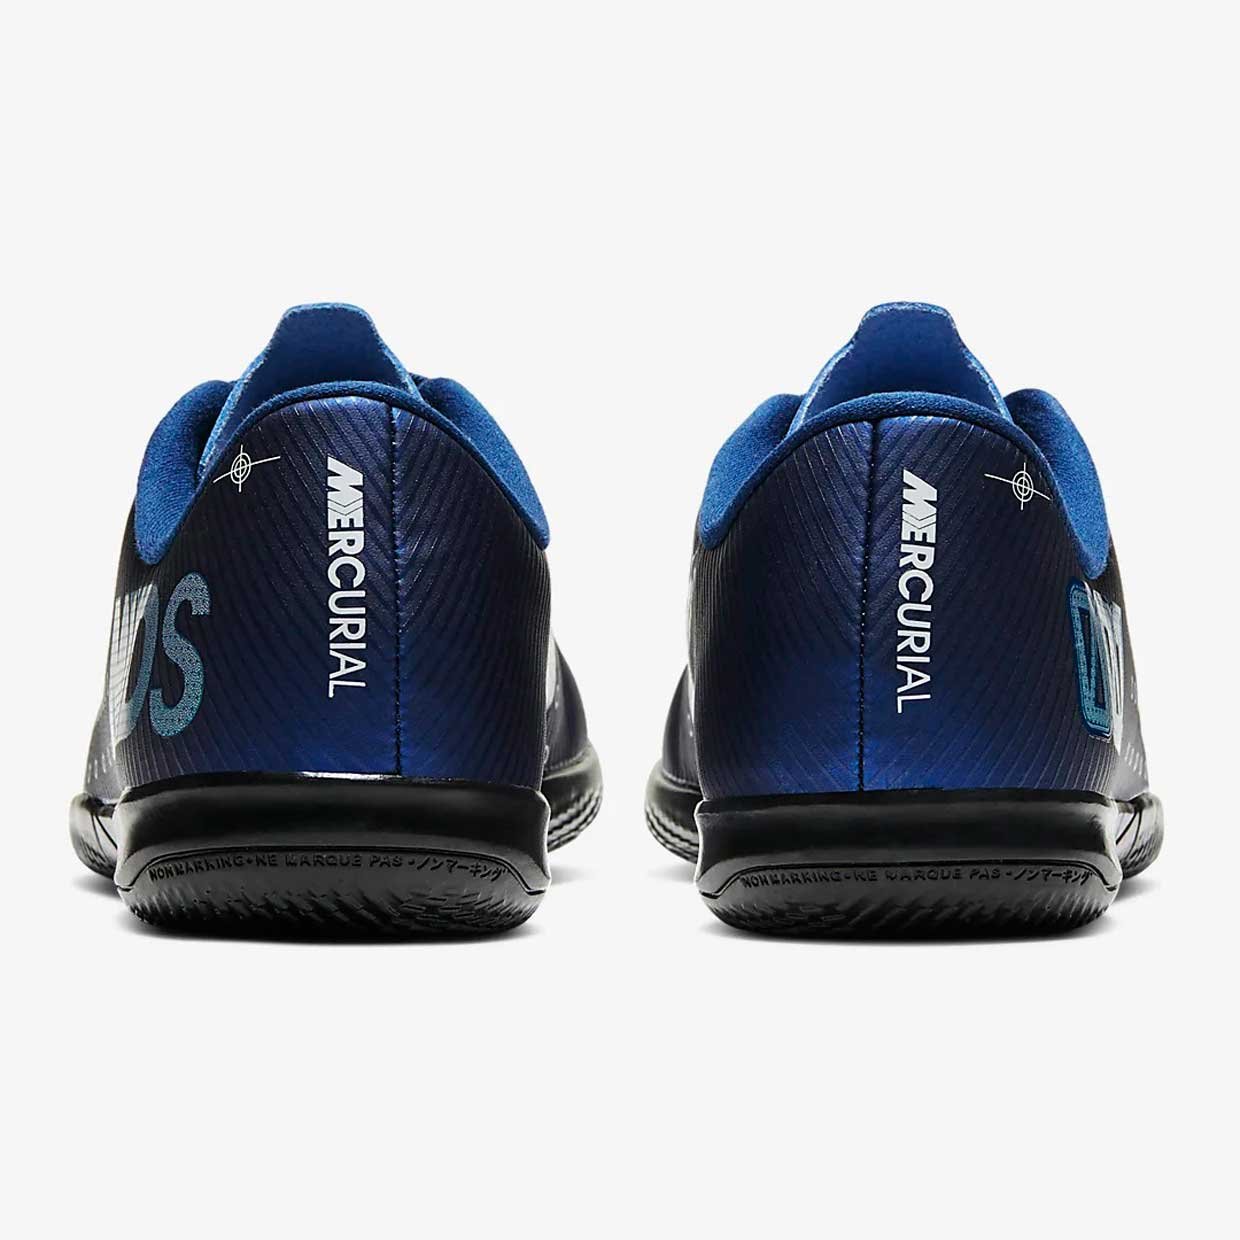 Обувь для зала Nike JR VAPOR 13 ACADEMY MDS IC